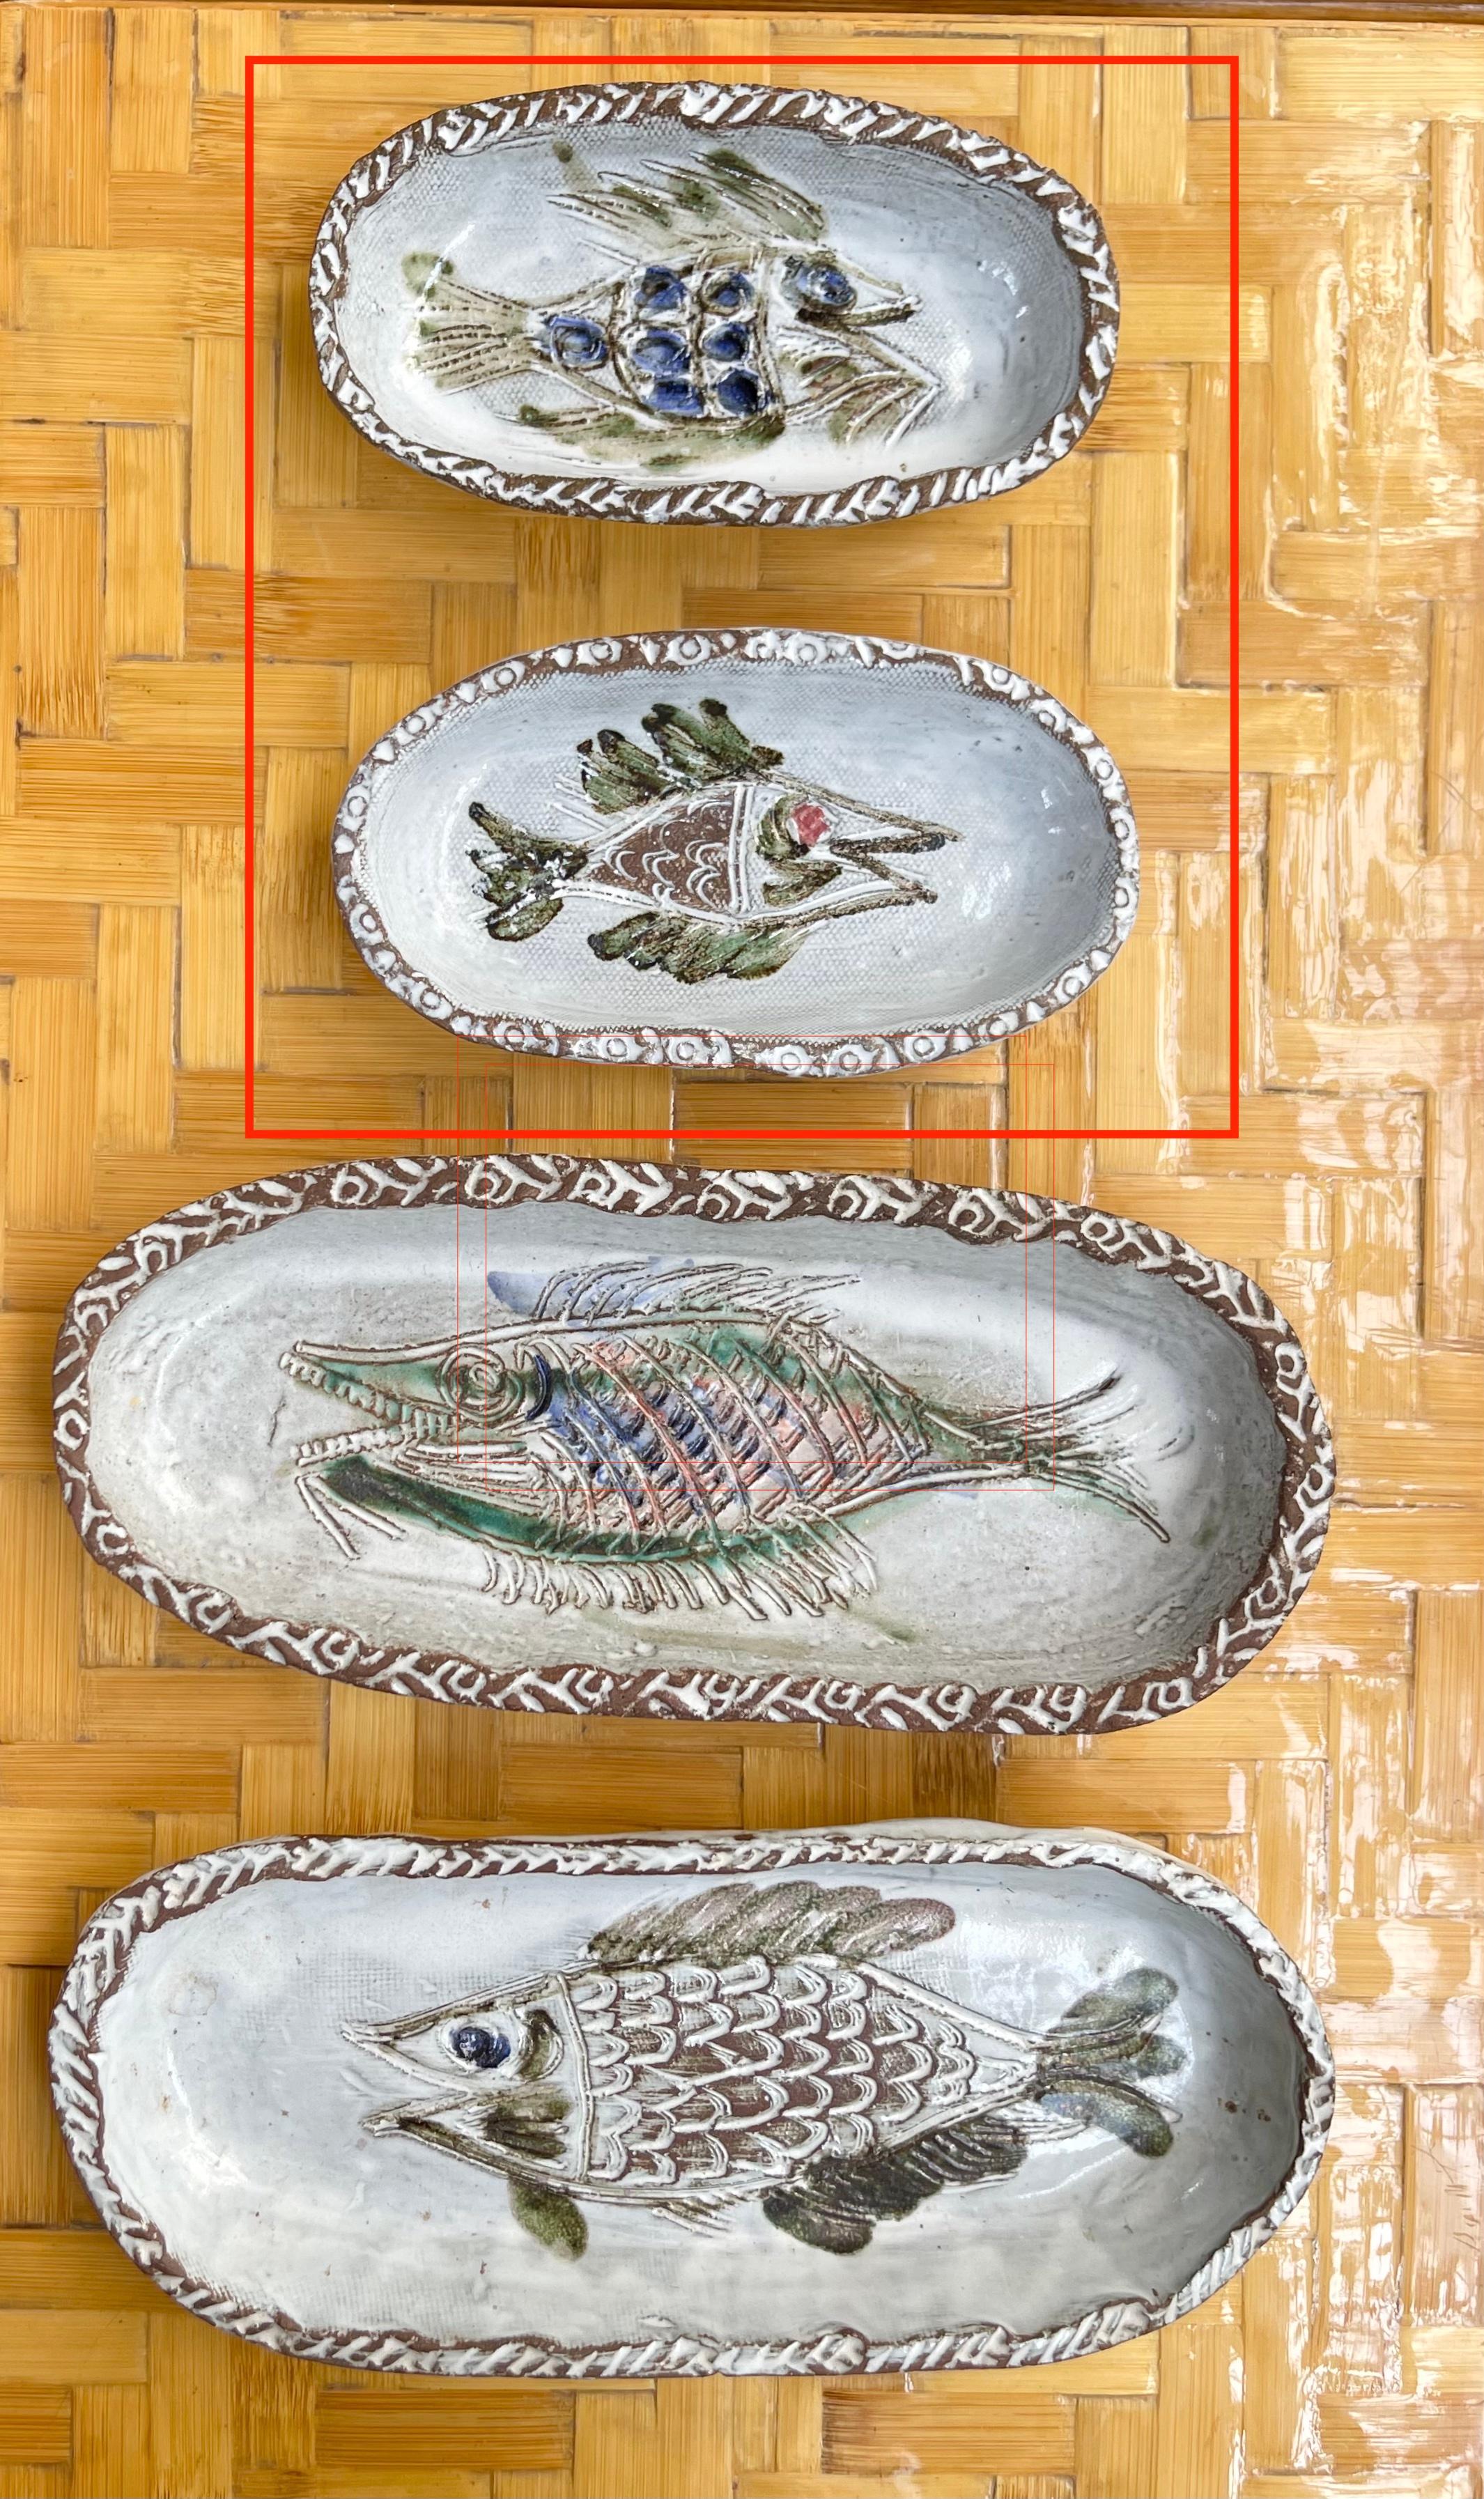 Une paire de plats décoratifs en céramique française à motif de poisson (vers 1970) par Albert Thiry. Deux plats en céramique de forme ovale ont une surface glacée blanc craie. Dans le creux des plats, un poisson est incisé dans la glaçure et peint